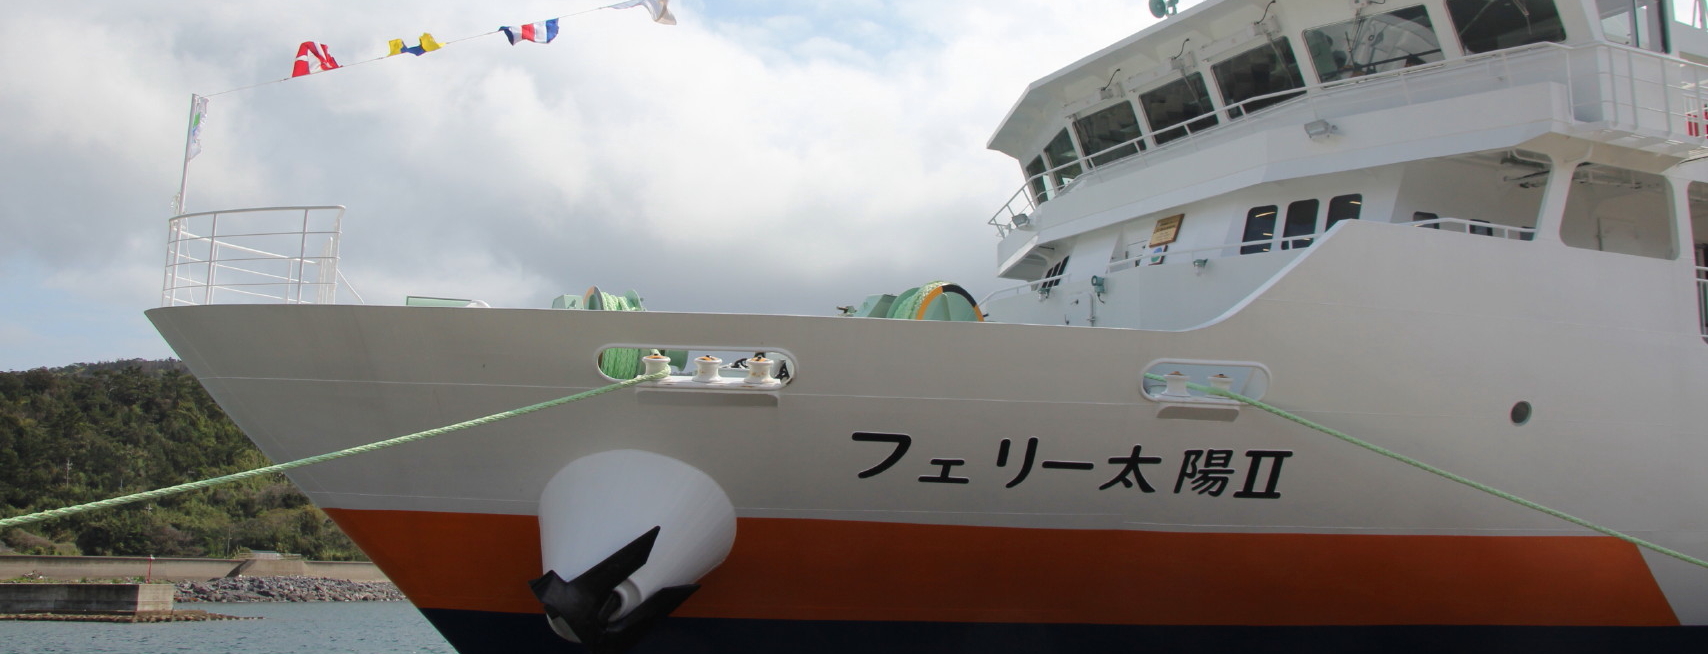 屋久島と口永良部島を結ぶ町営船「フェリー太陽Ⅱ」